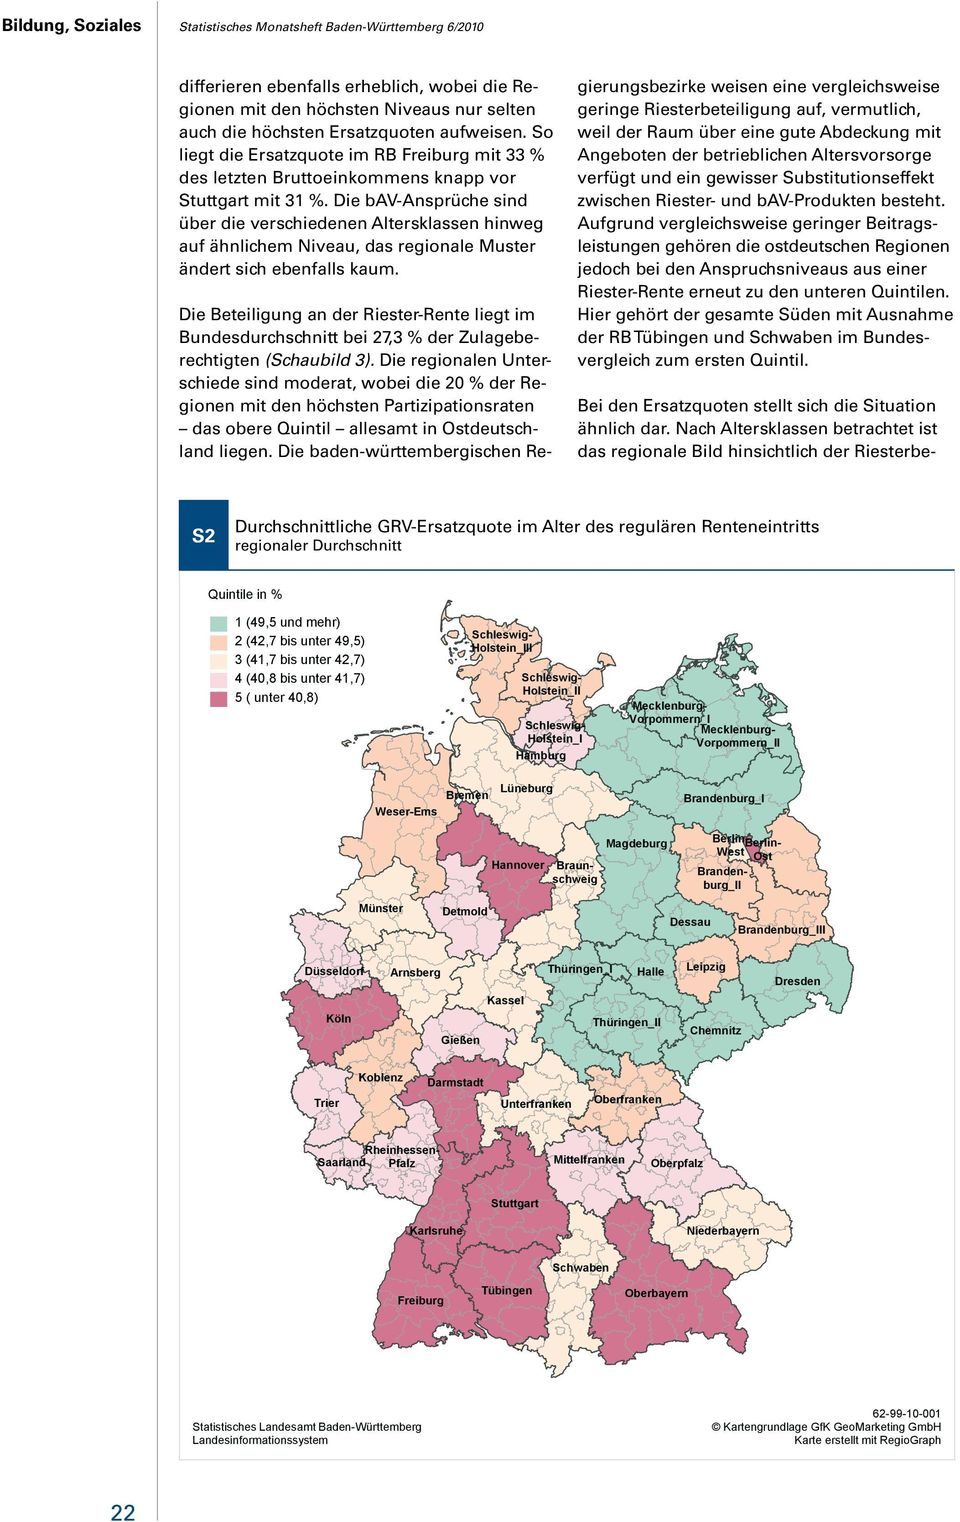 Aufgrund vergleichsweise geringer Beitragsleistungen gehören die ostdeutschen Regionen jedoch bei den Anspruchsniveaus aus einer Riester-Rente erneut zu den unteren Quintilen.